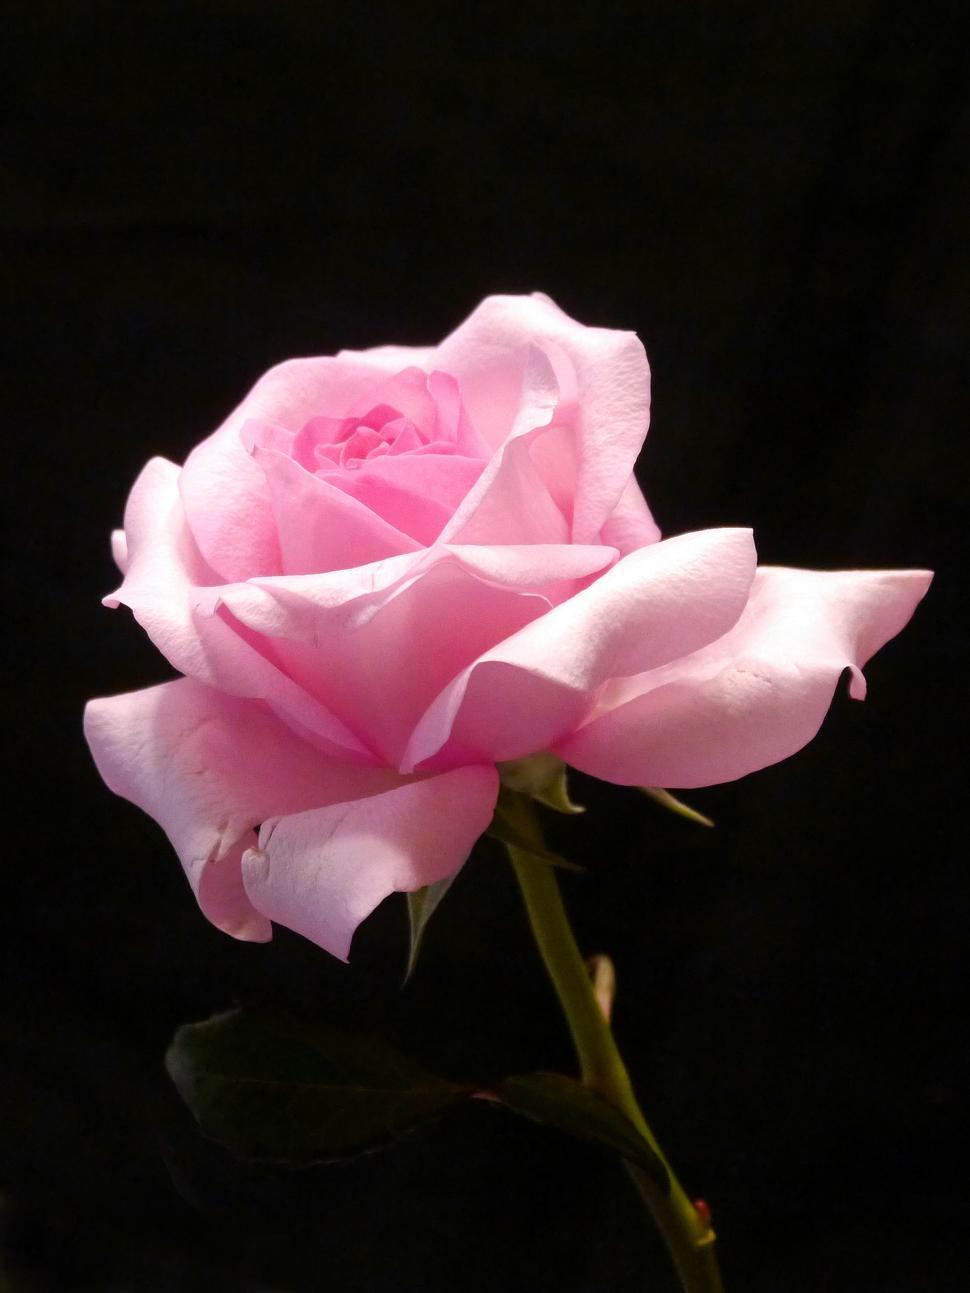 Pink Rose Images Free Download - KibrisPDR